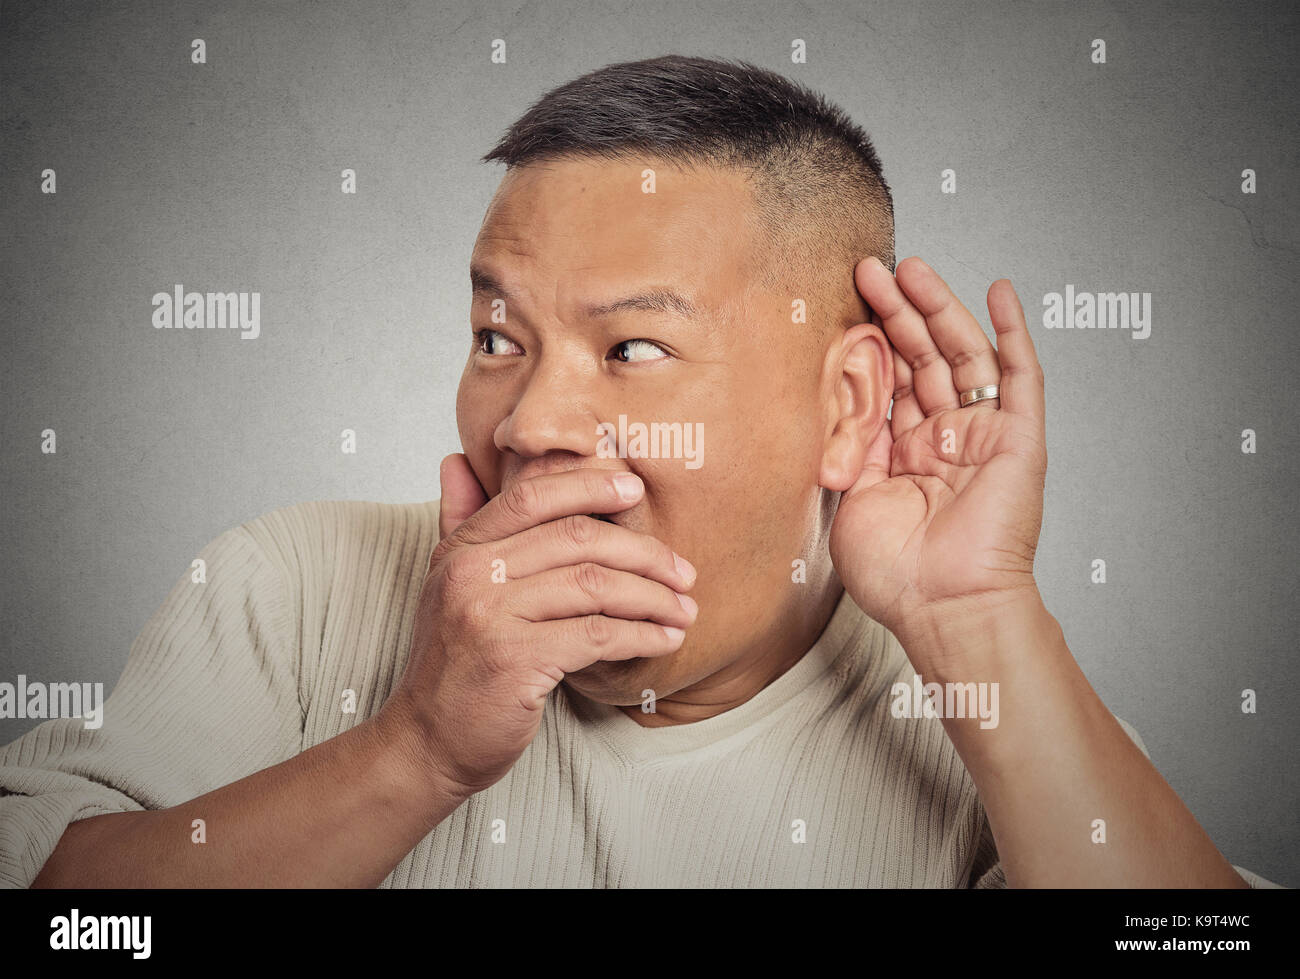 Portrait de l'homme, part de l'oreille pour écouter secrètement en geste d'essayer sur des commérages juteux conversation actualités violation de la vie privée, choqué par ce qu'il entendra, isolé Banque D'Images